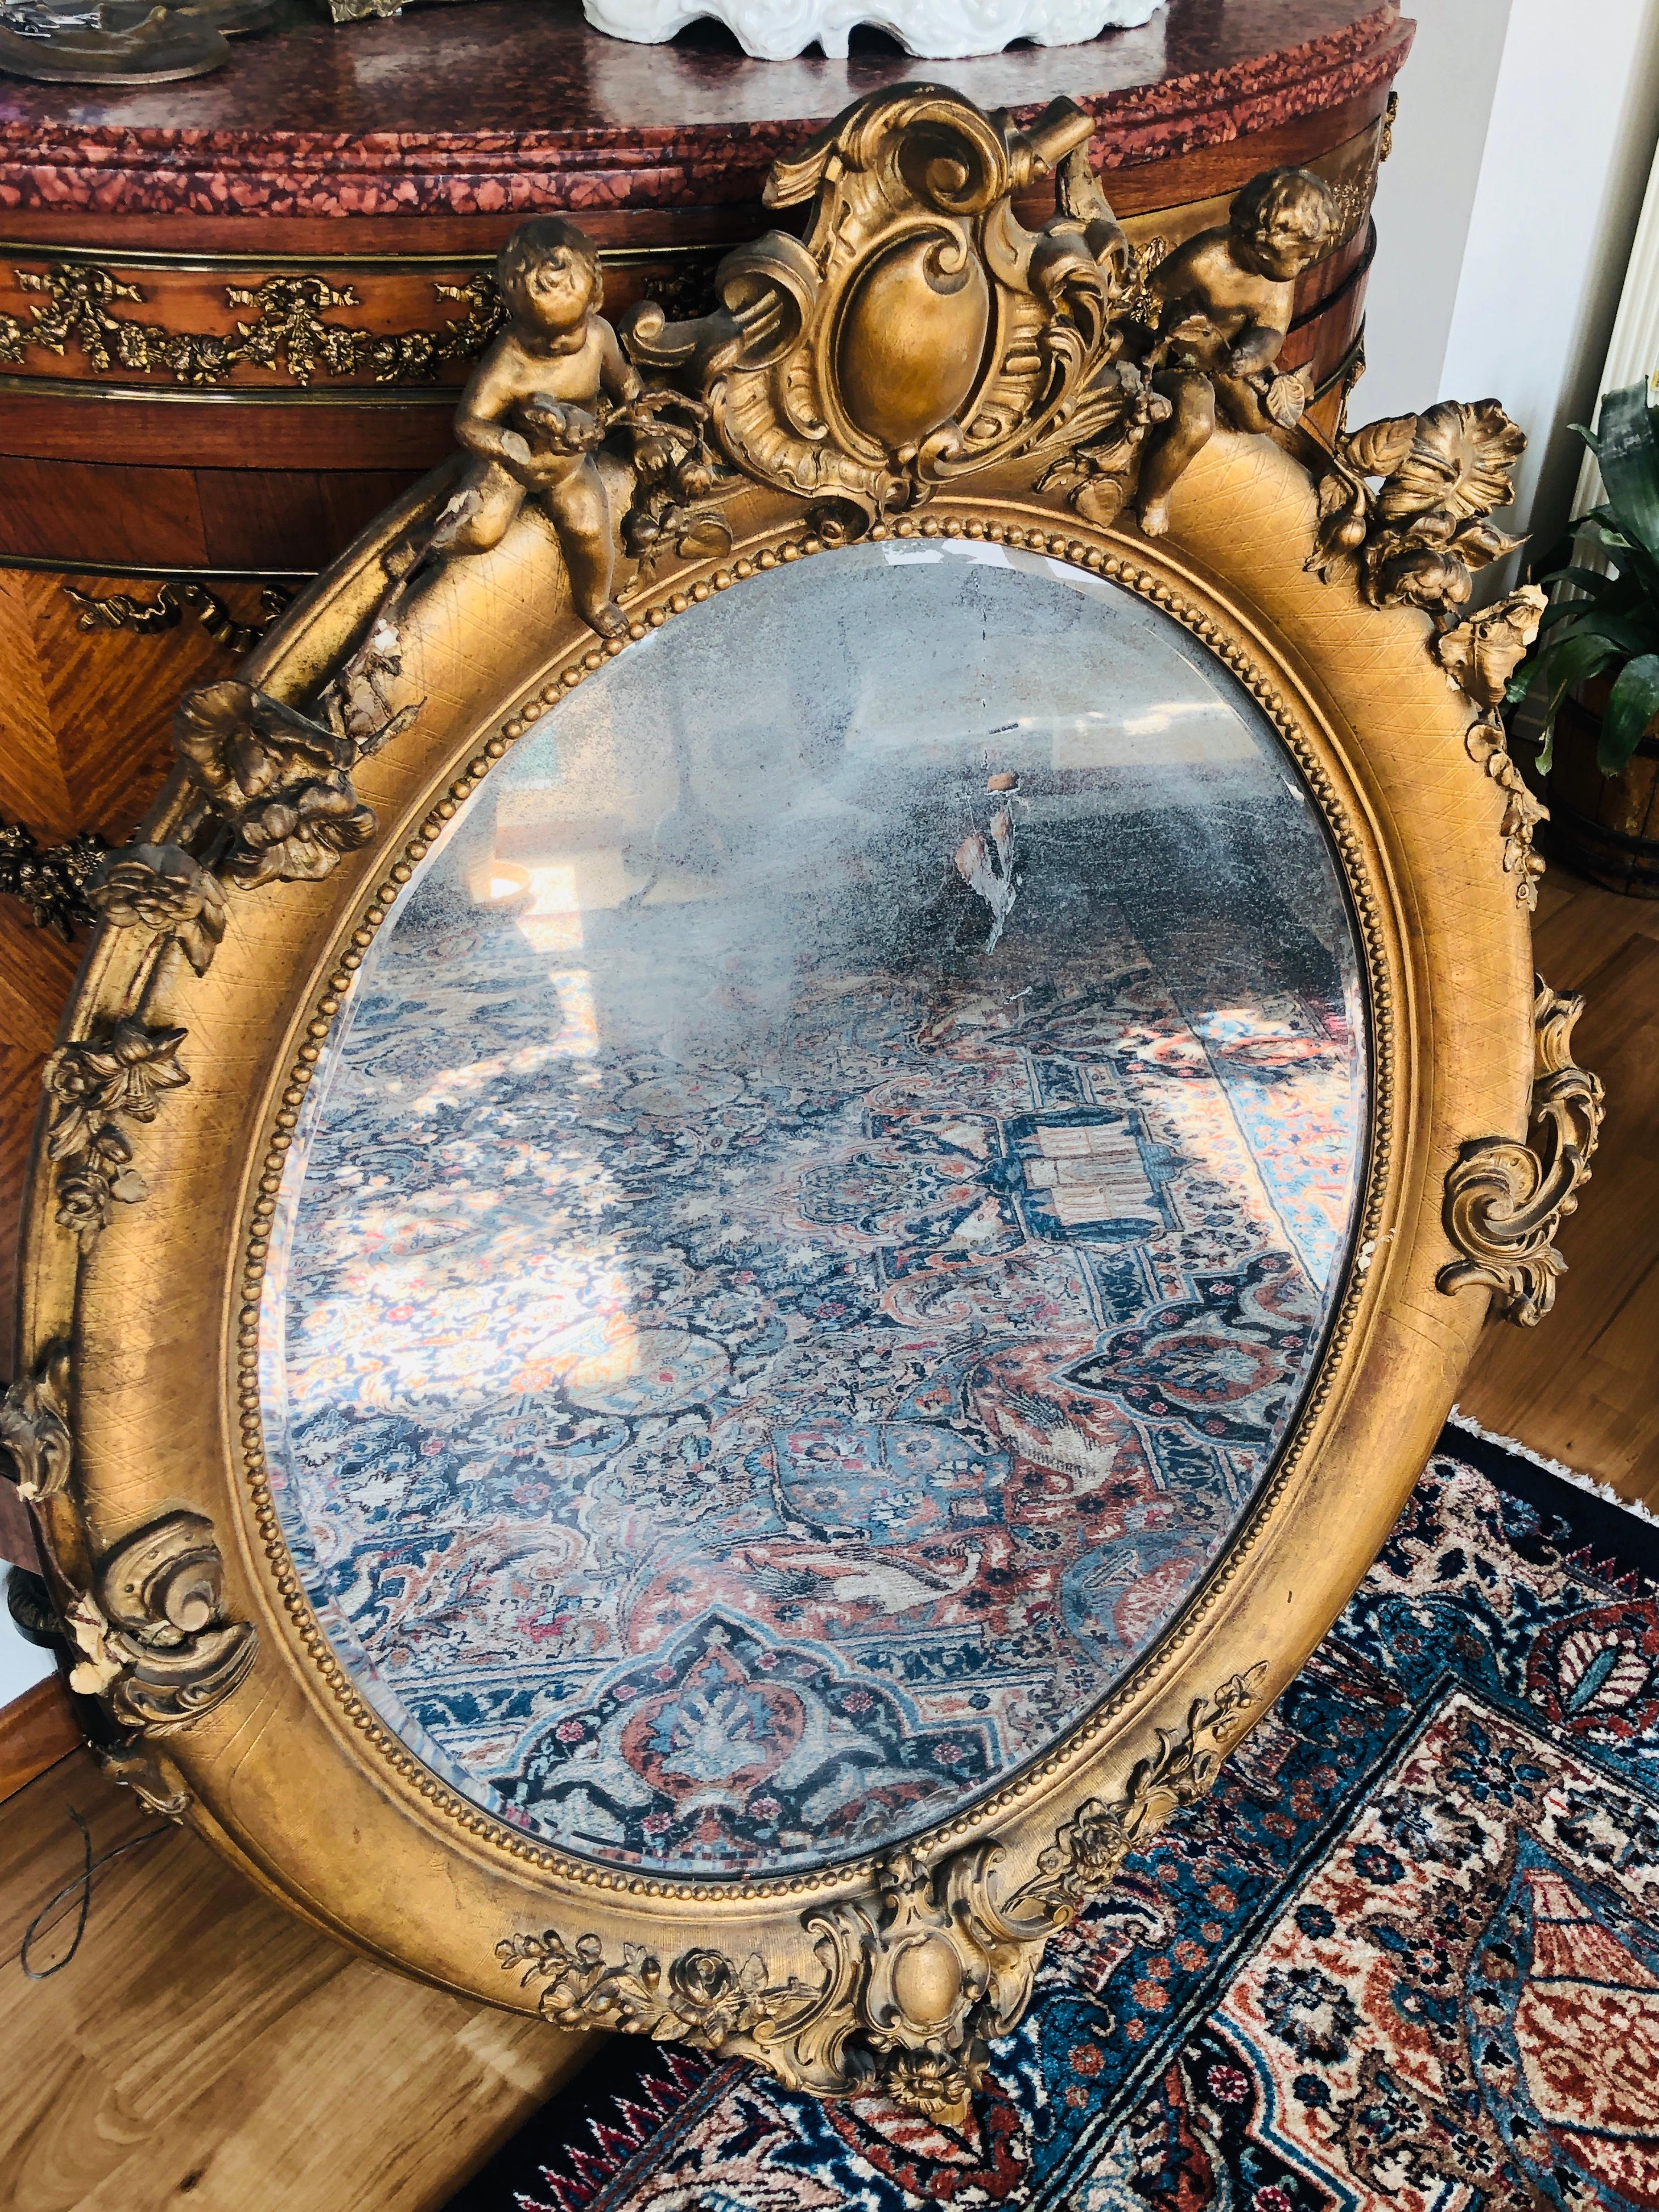 ovaler Spiegel aus dem 19. Jahrhundert aus der Zeit Napoleons III. Geschnitztes Holz, mit Gesso und Blattgold überzogen. Dieses Stück hat schöne Ornamente und ein paar Putten auf der Oberseite und es trägt sein Originalglas.
Frankreich, 1860.
  